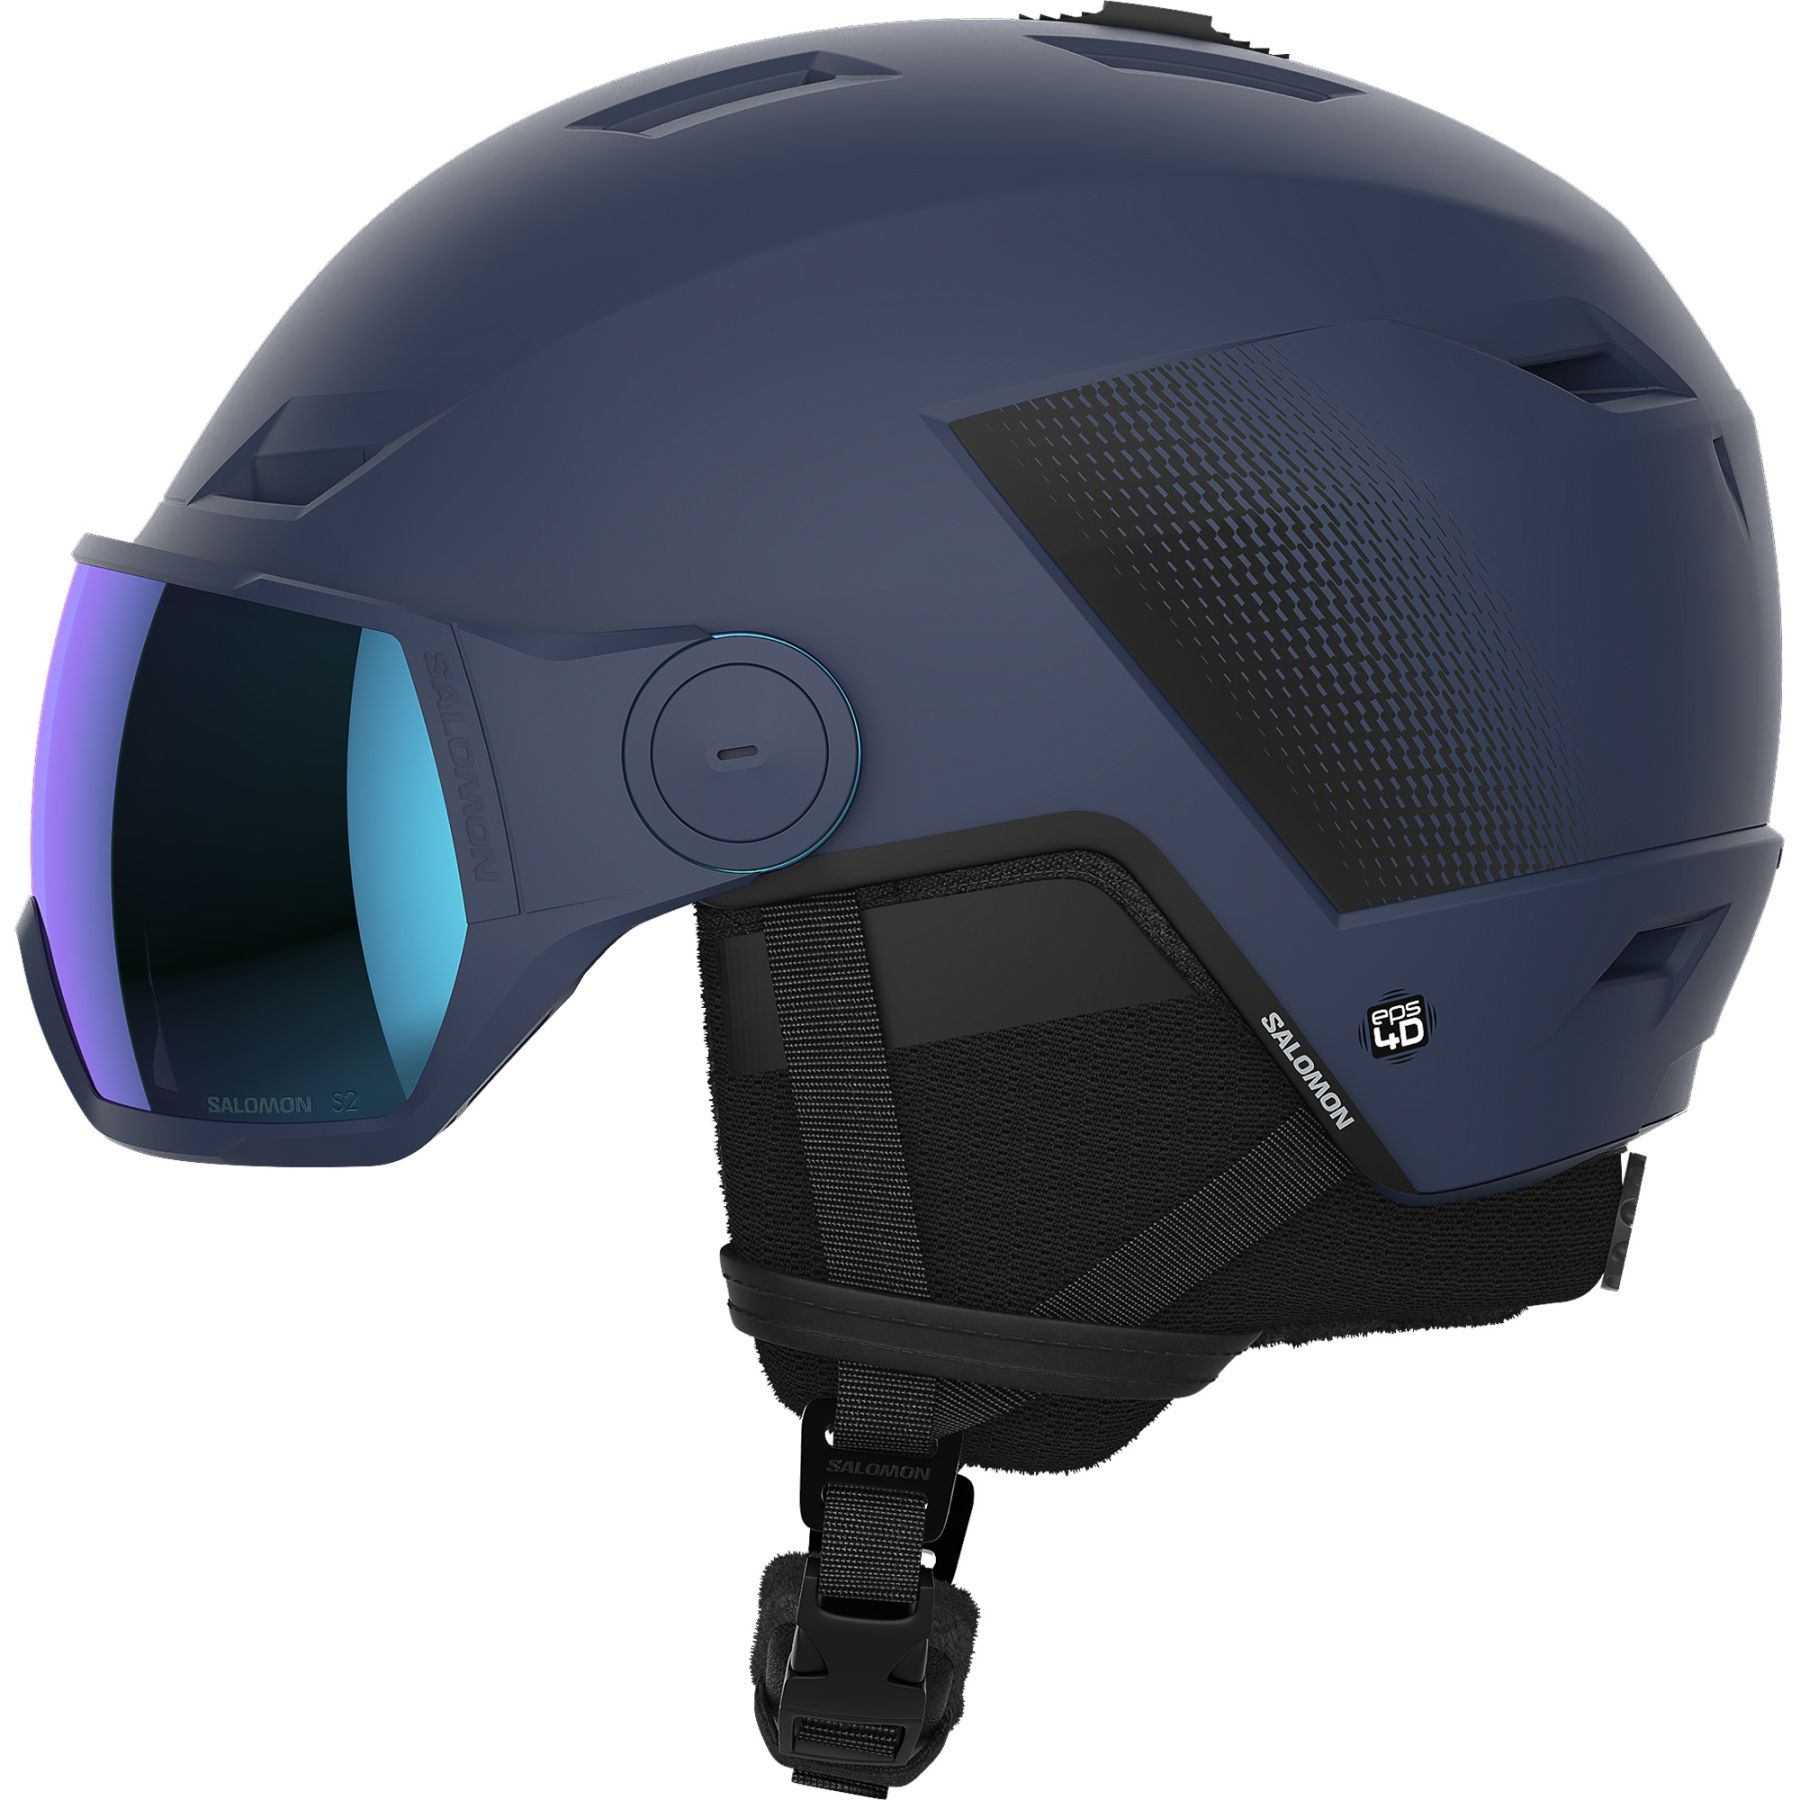 Brug Salomon Pioneer LT Visor, skihjelm med visir, blå til en forbedret oplevelse